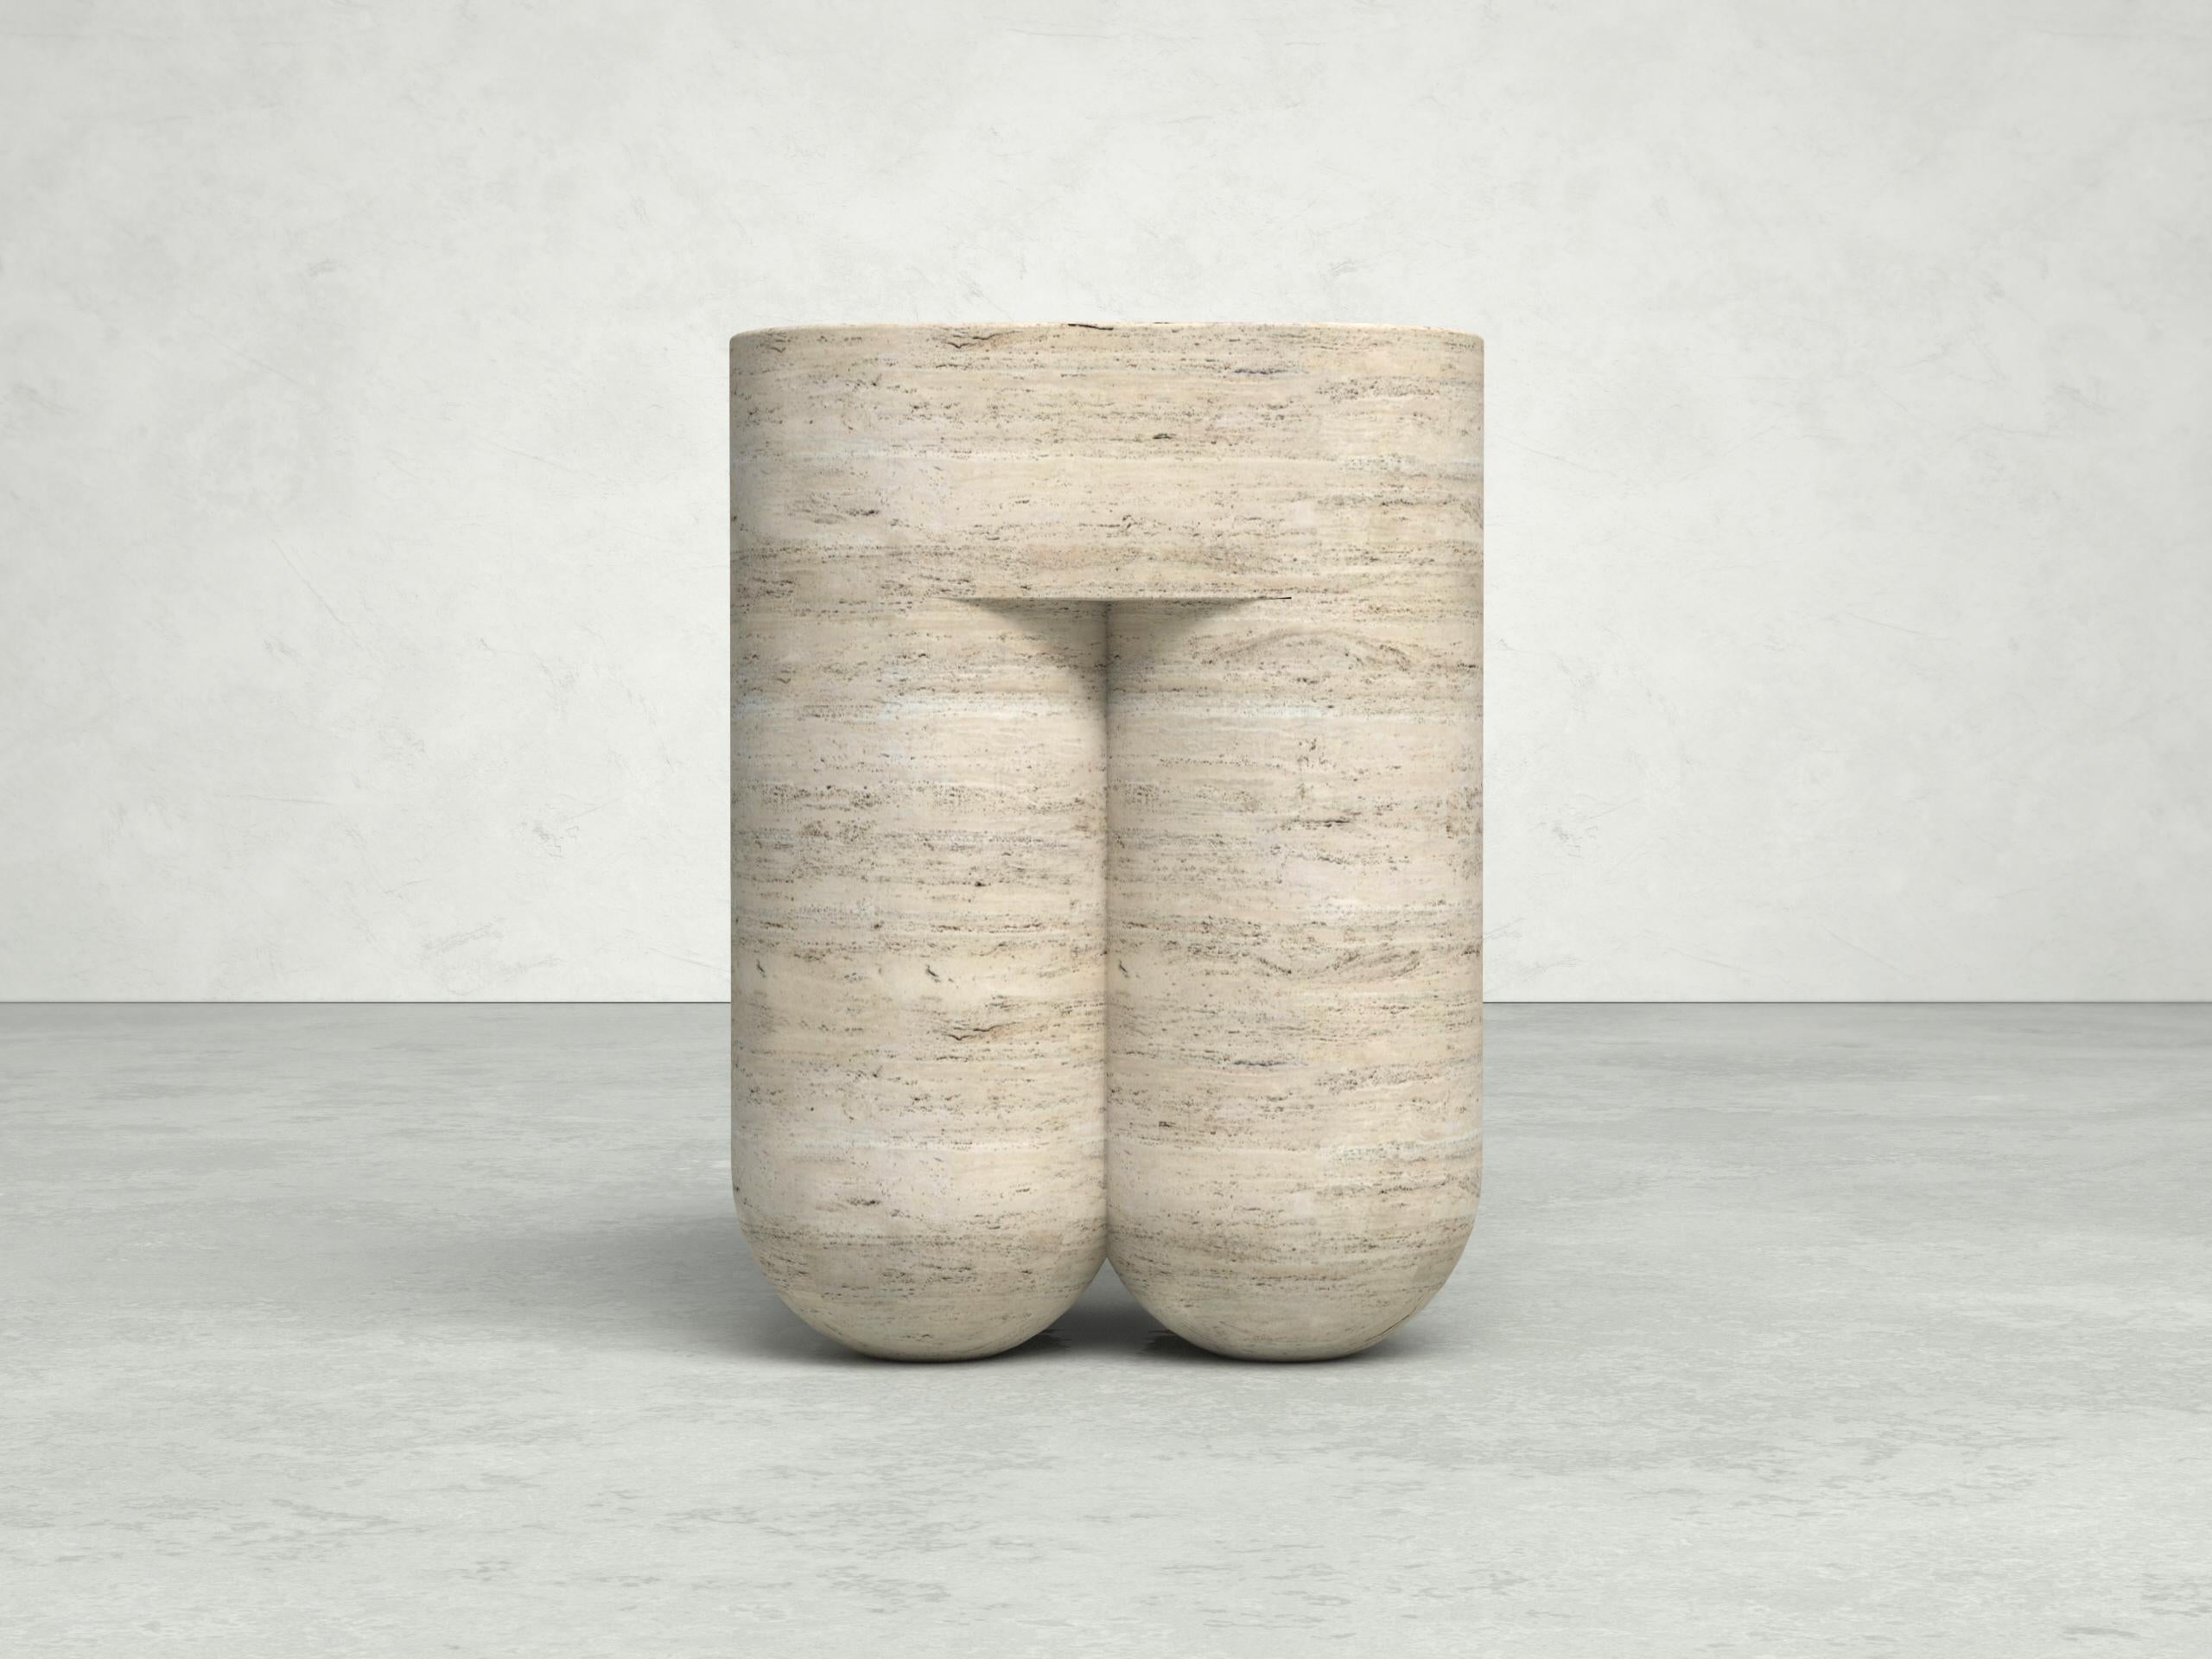 Chunky Classic Travertine Side Table & Stool by Dalmoto
Dimensions : D 34 x L 34 x H 46 cm.
MATERIAL : Travertin classique.

Disponible en différentes options de pierre. Veuillez nous contacter. 

ETAMORPH est un studio de design basé à New York,